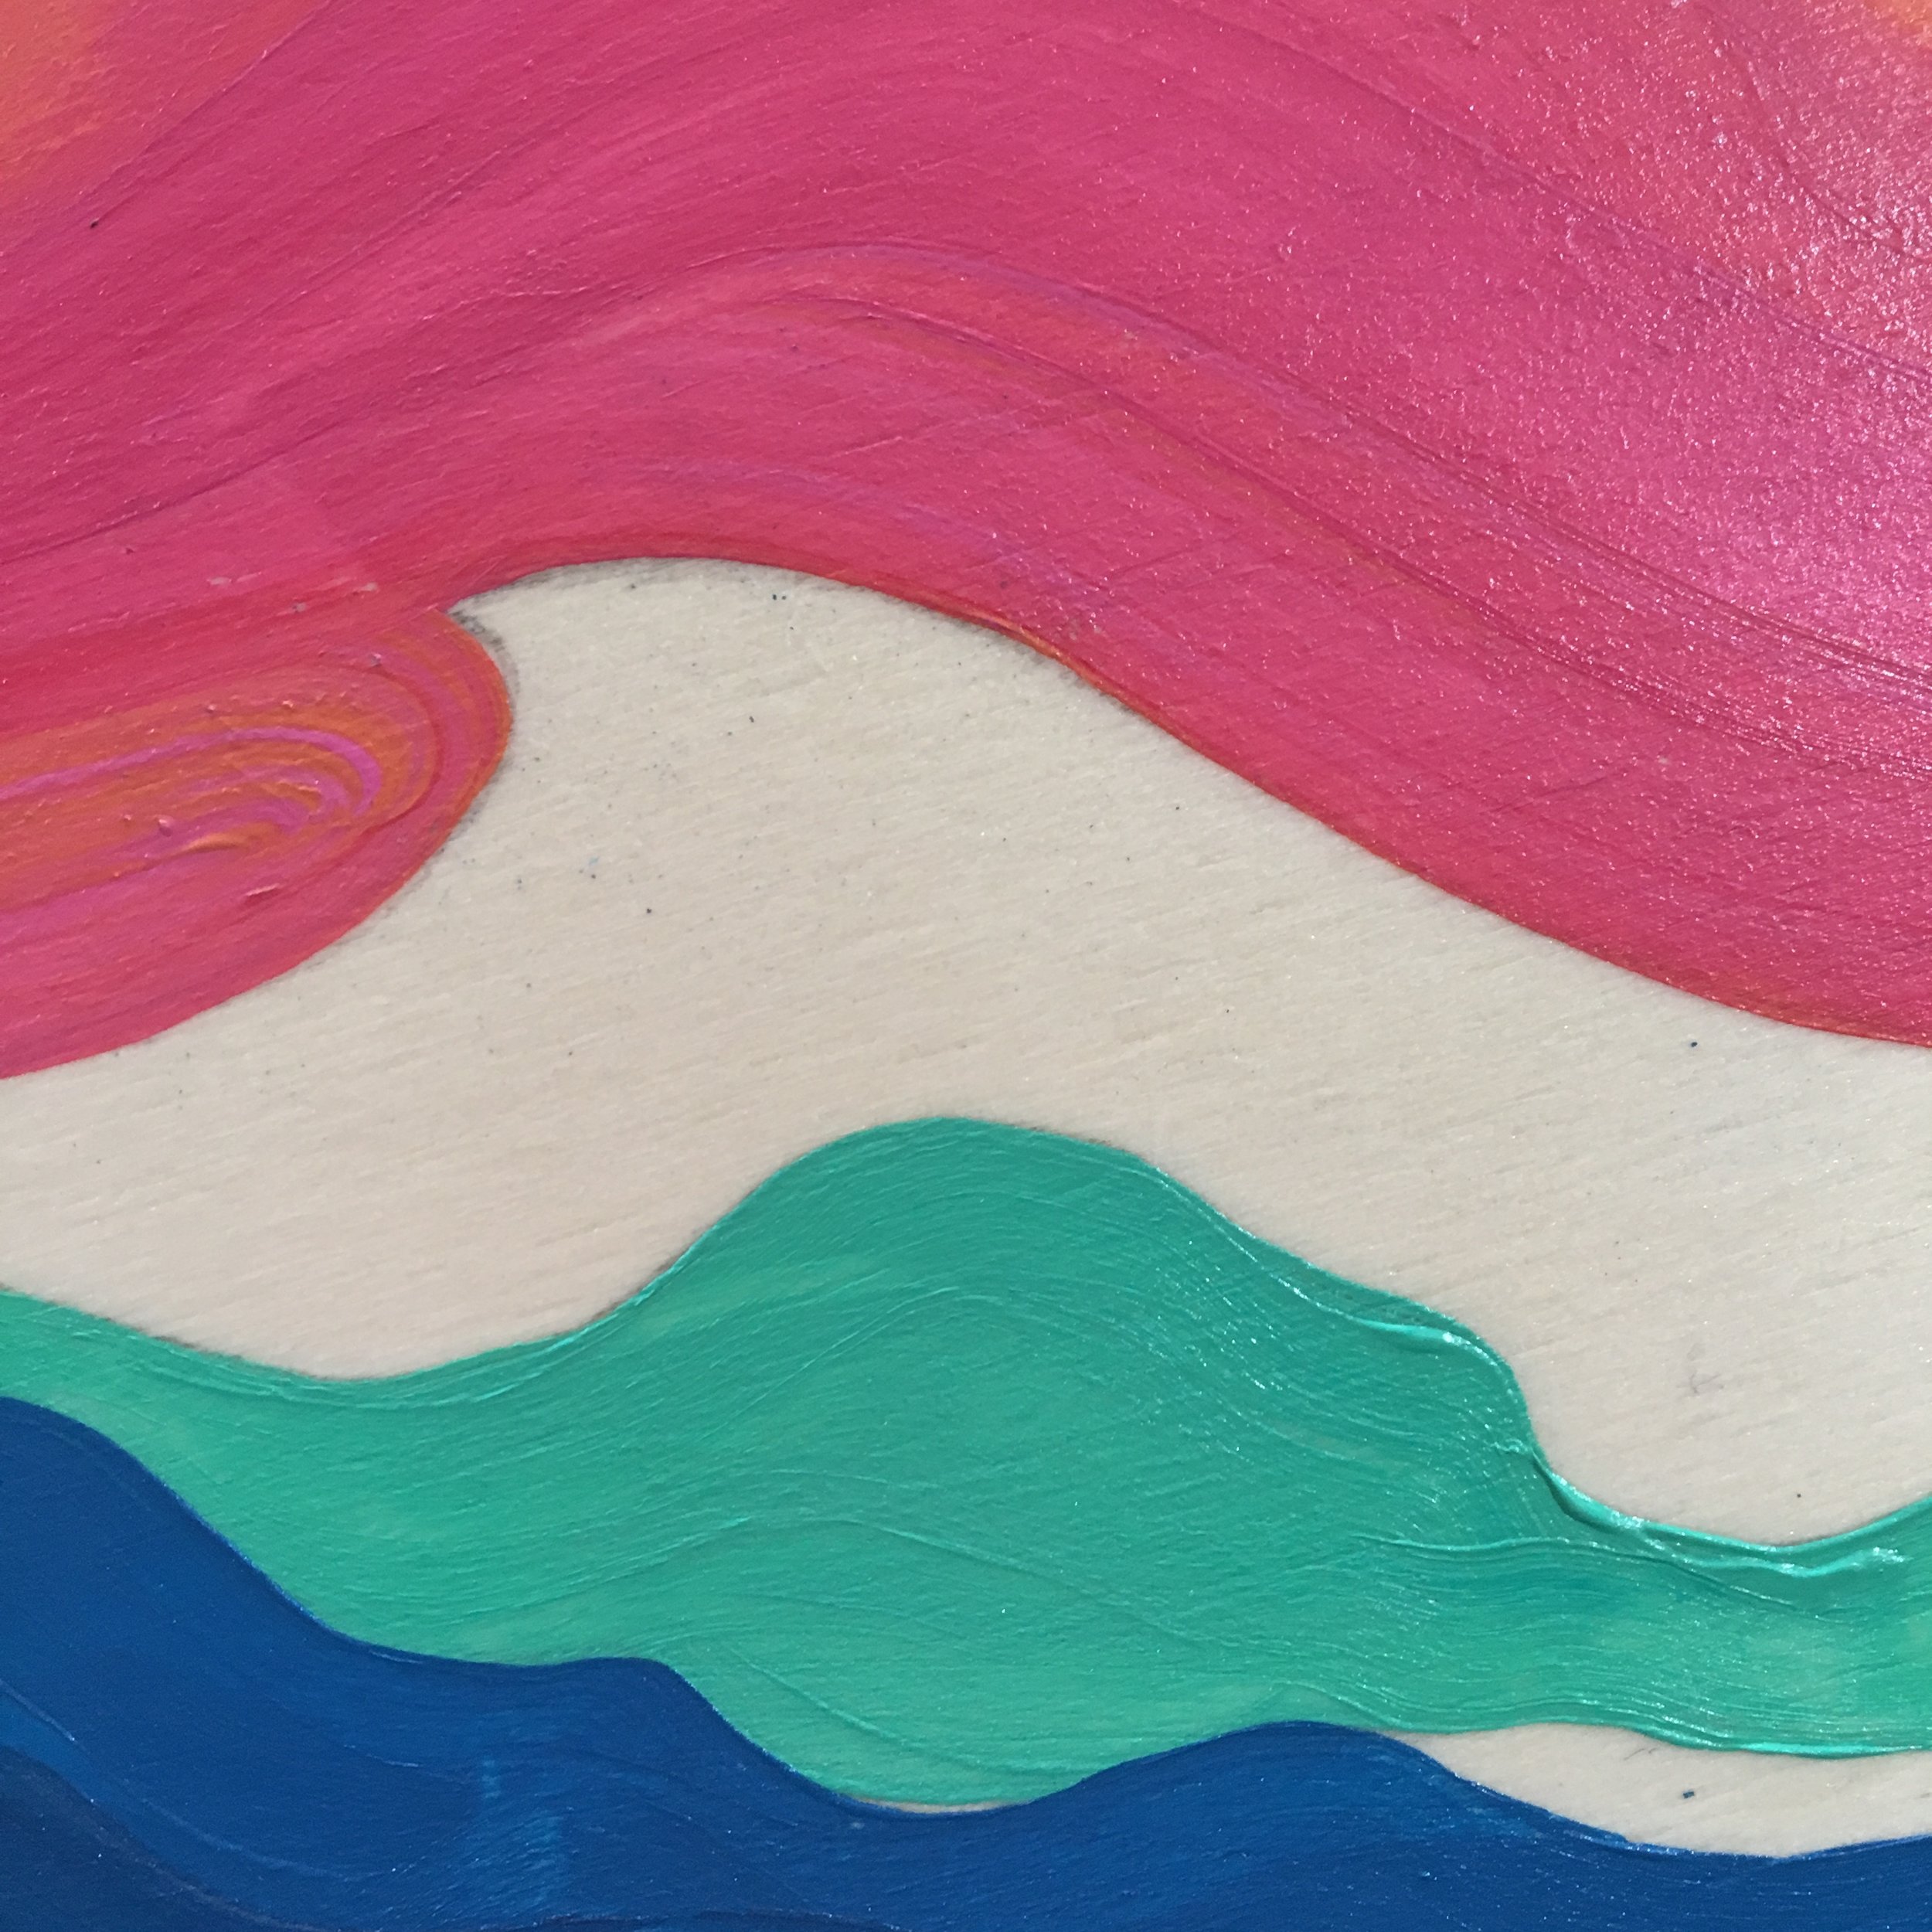 heidi horchler — Anatomy of a painting: Flamingo Lounge